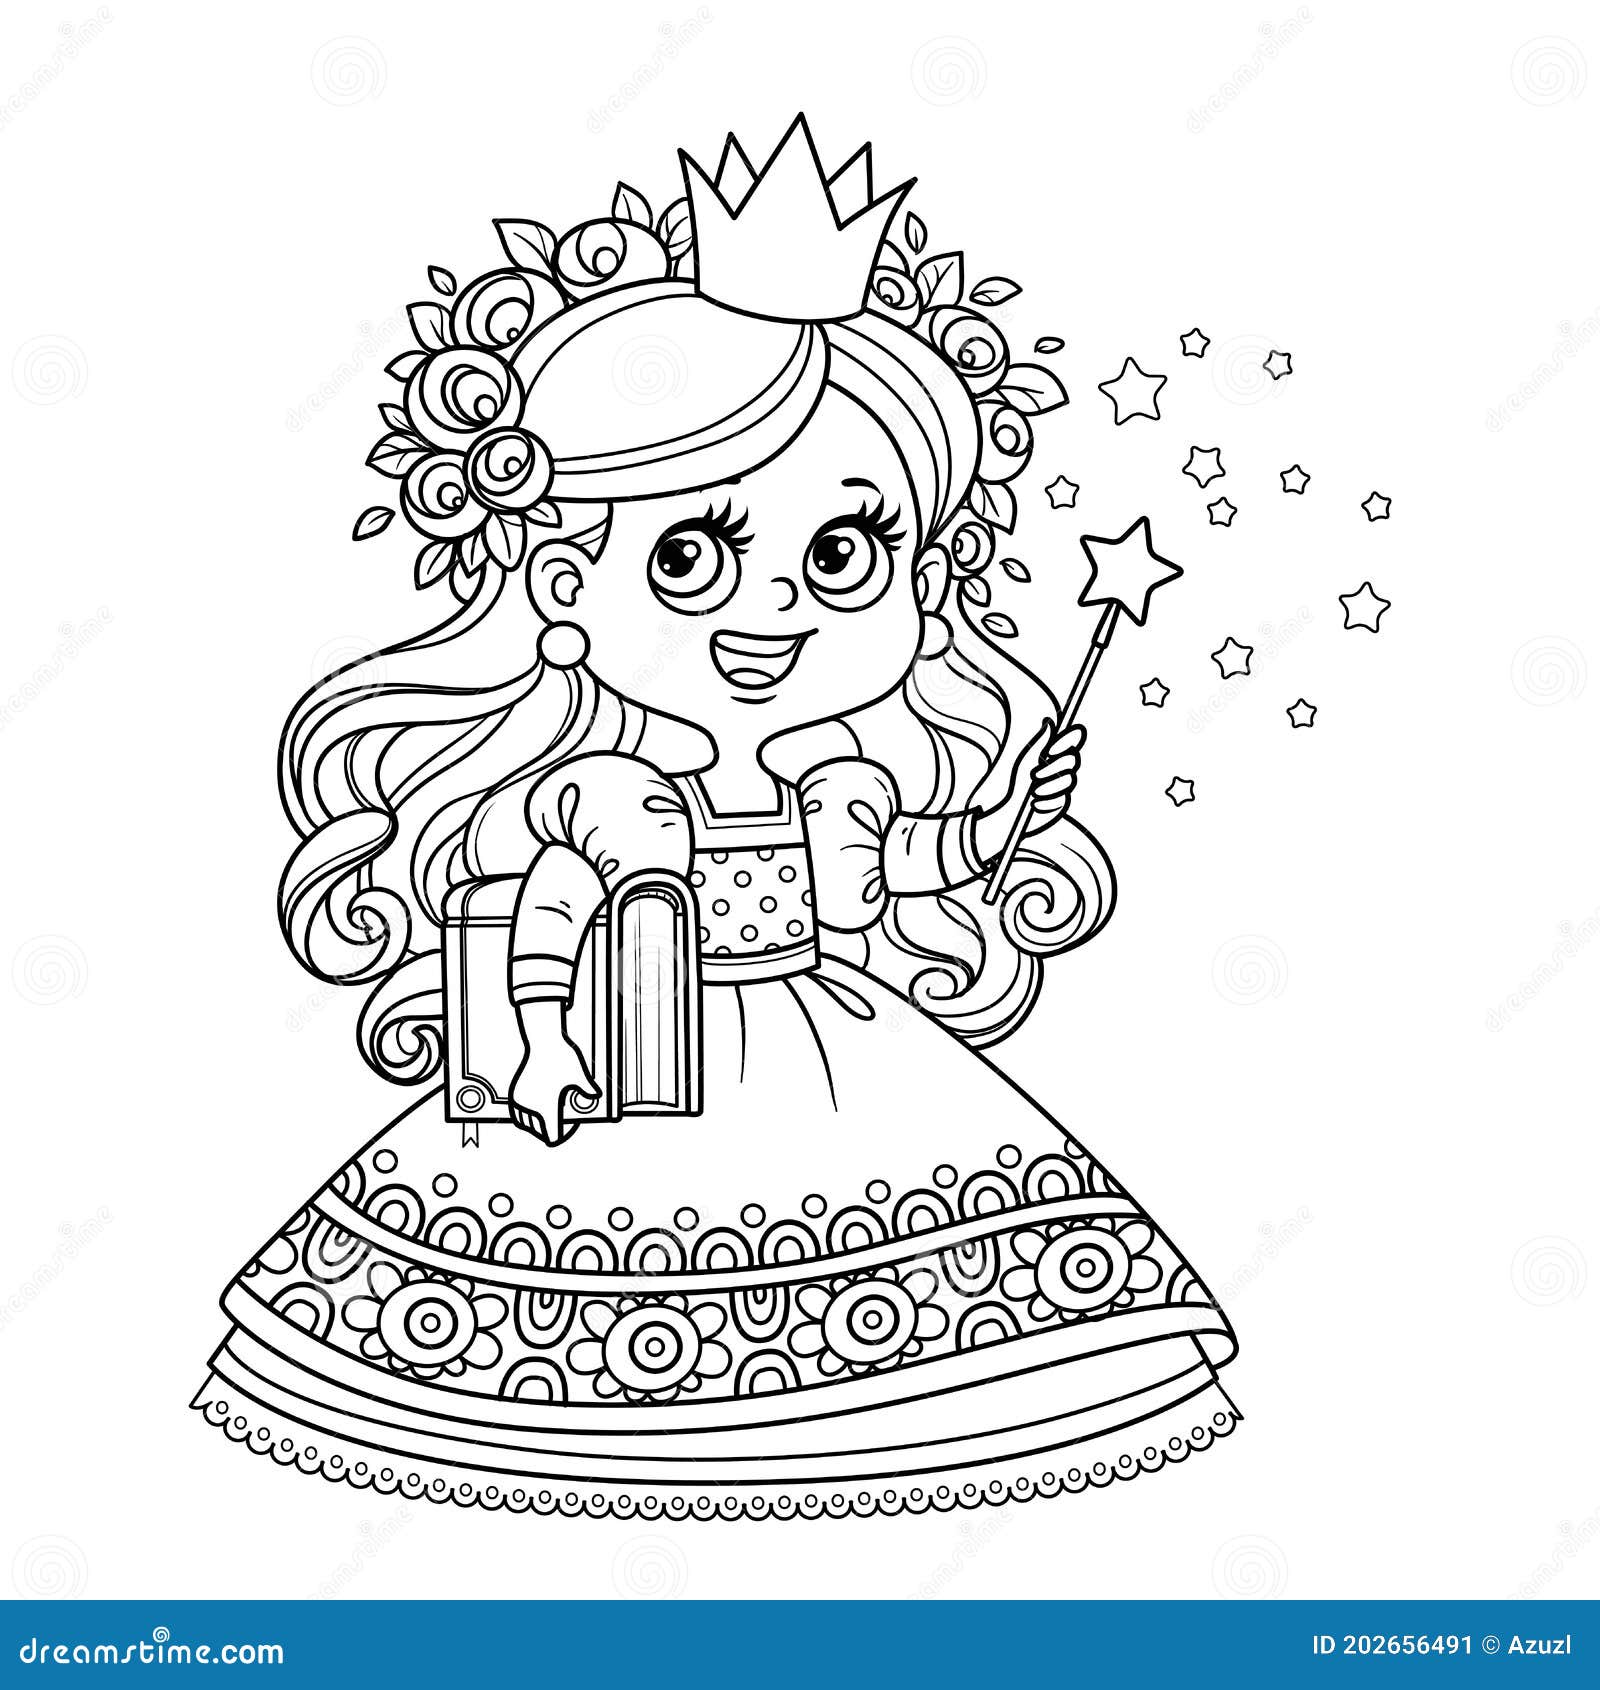 Desenho de princesa com varinha mágica para pintar